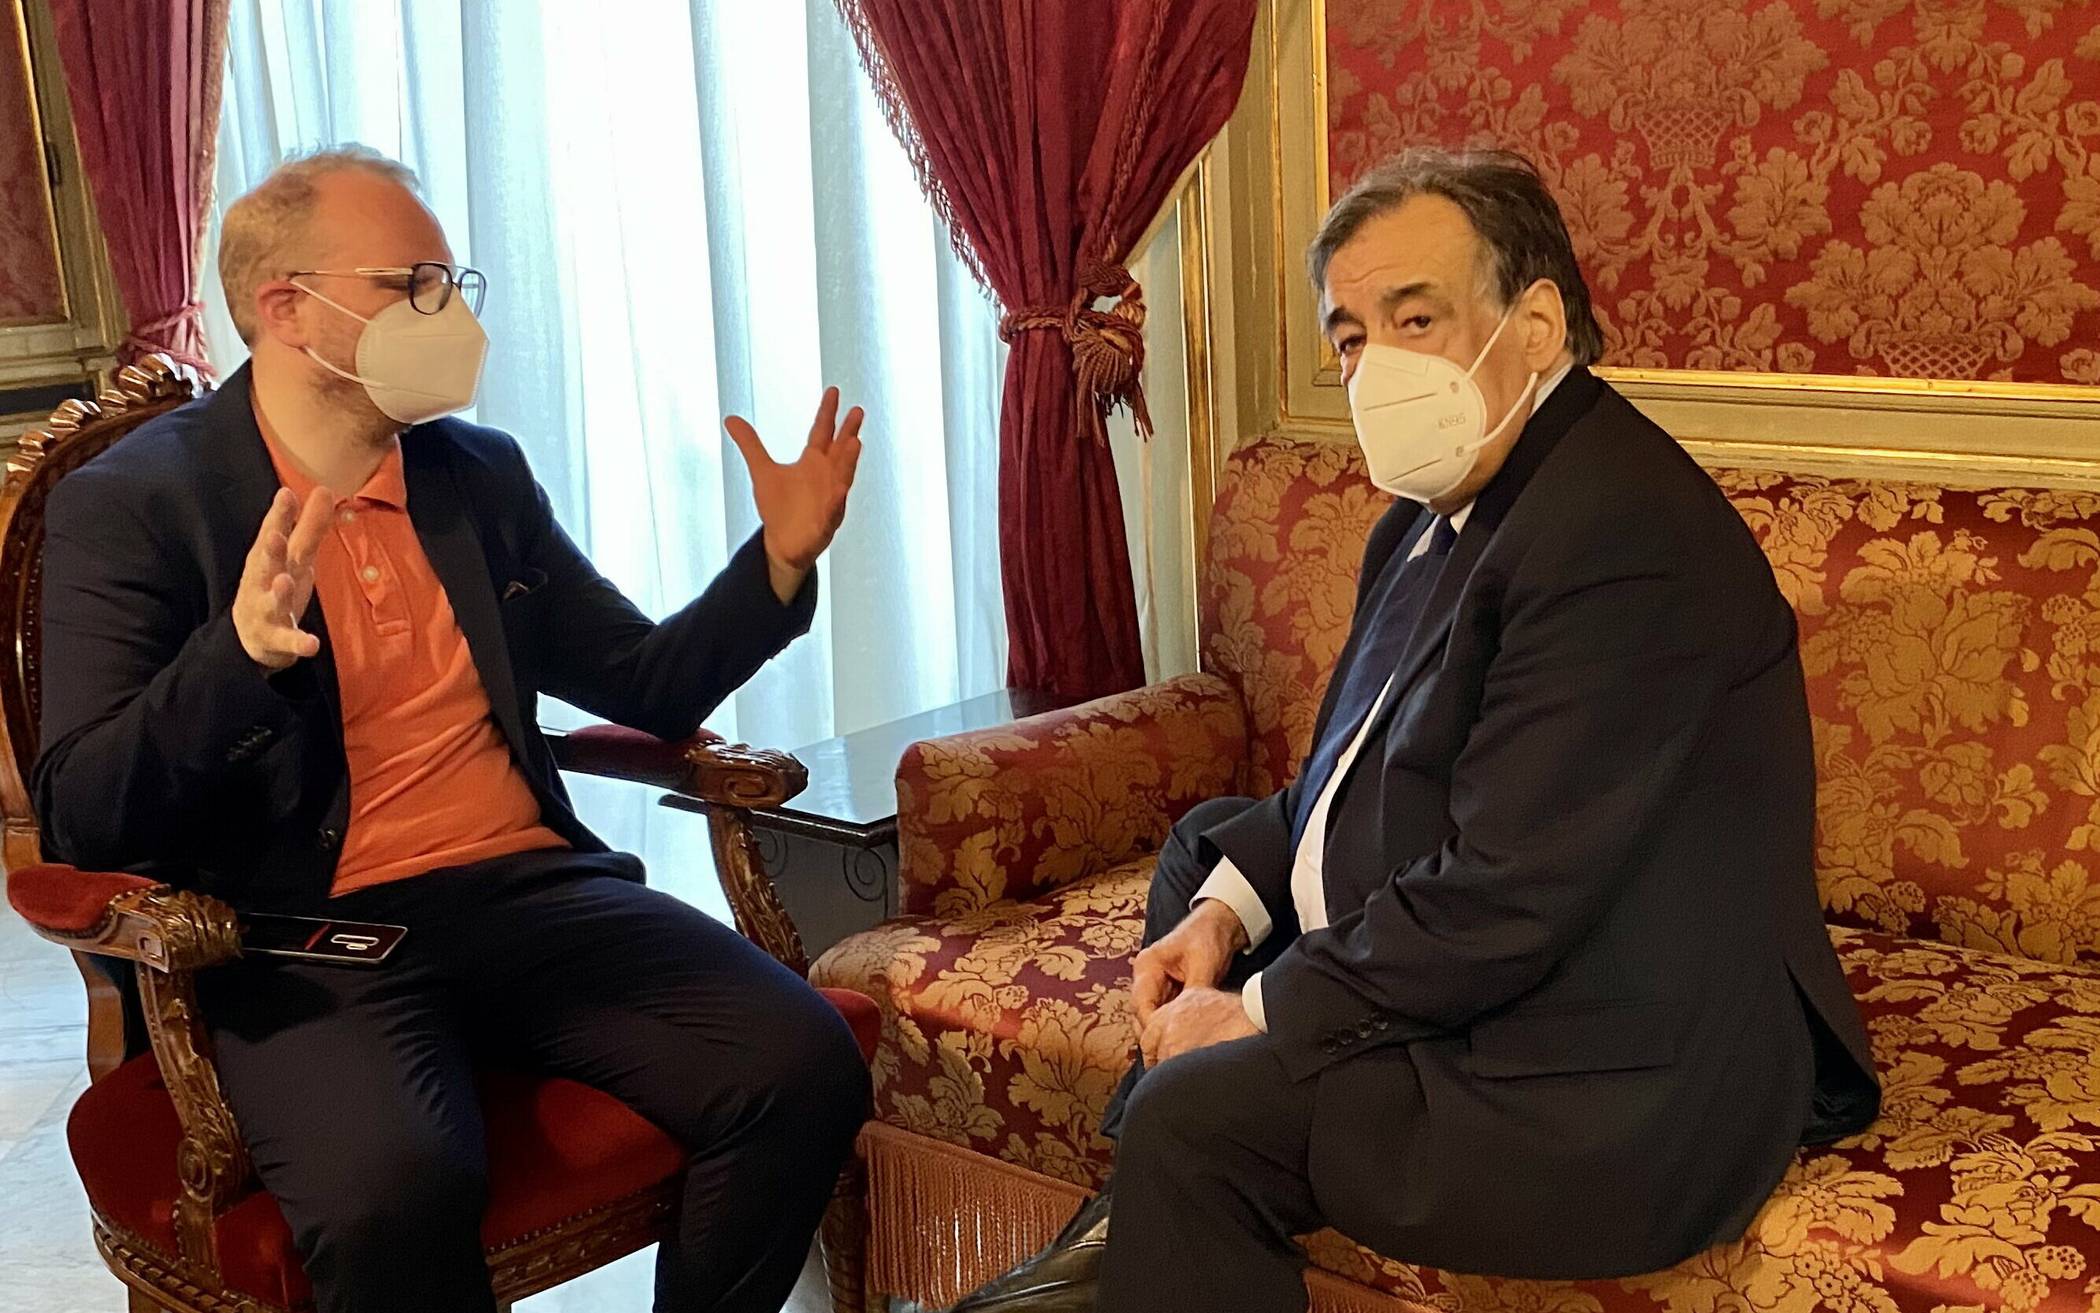  Helge Lindh im Gespräch mit Leoluca Orlando, dem Bürgermeister der sizilianischen Hauptstadt Palermo.  